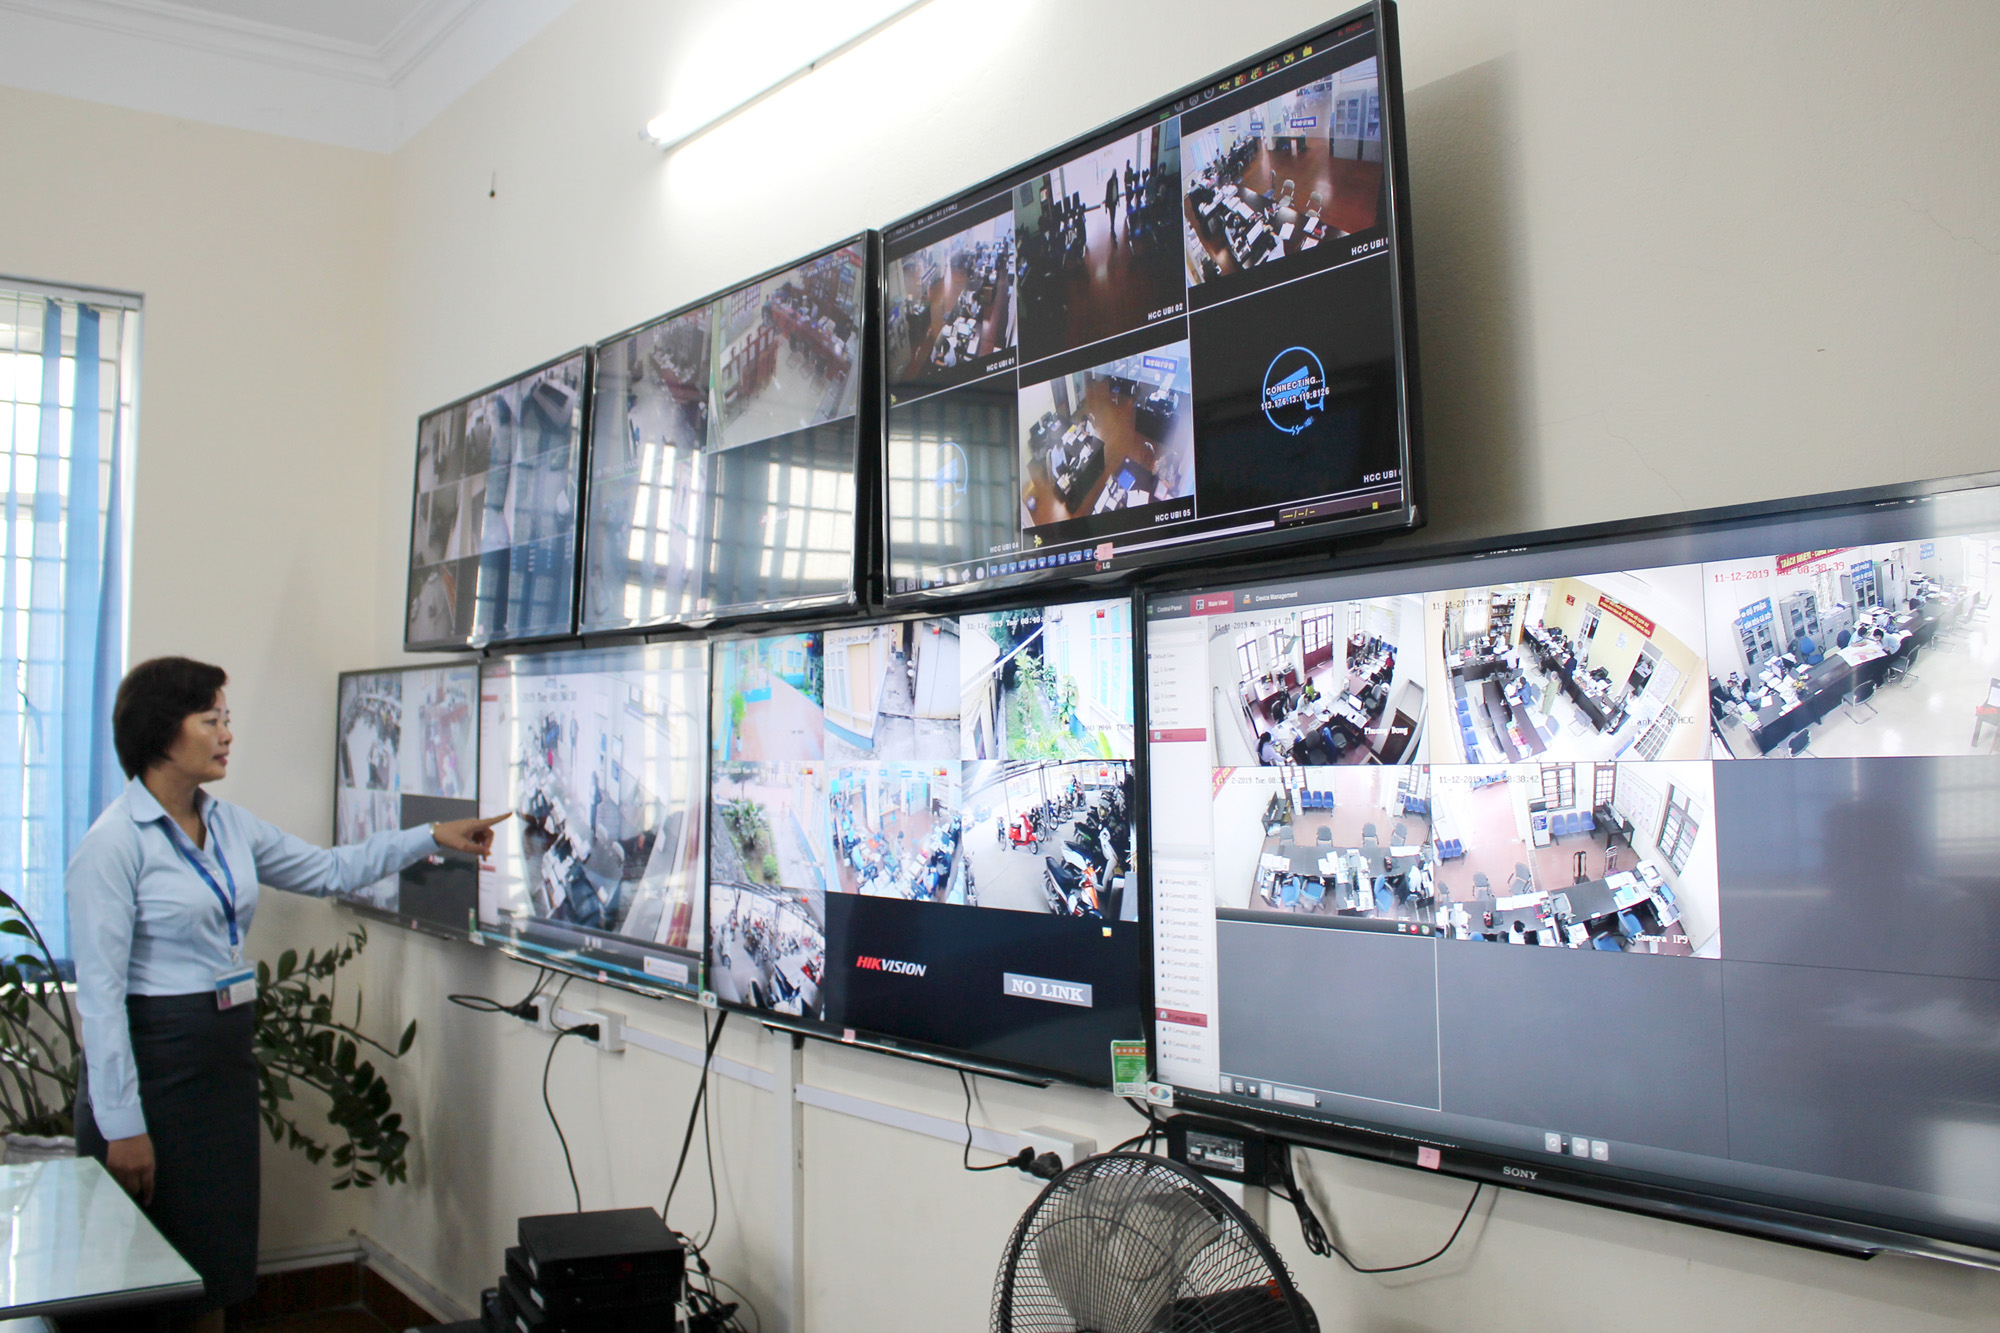 Hoạt động giải quyết TTHC cho người dân từ cấp xã được TP Uông Bí giám sát qua hệ thống camera tự động.